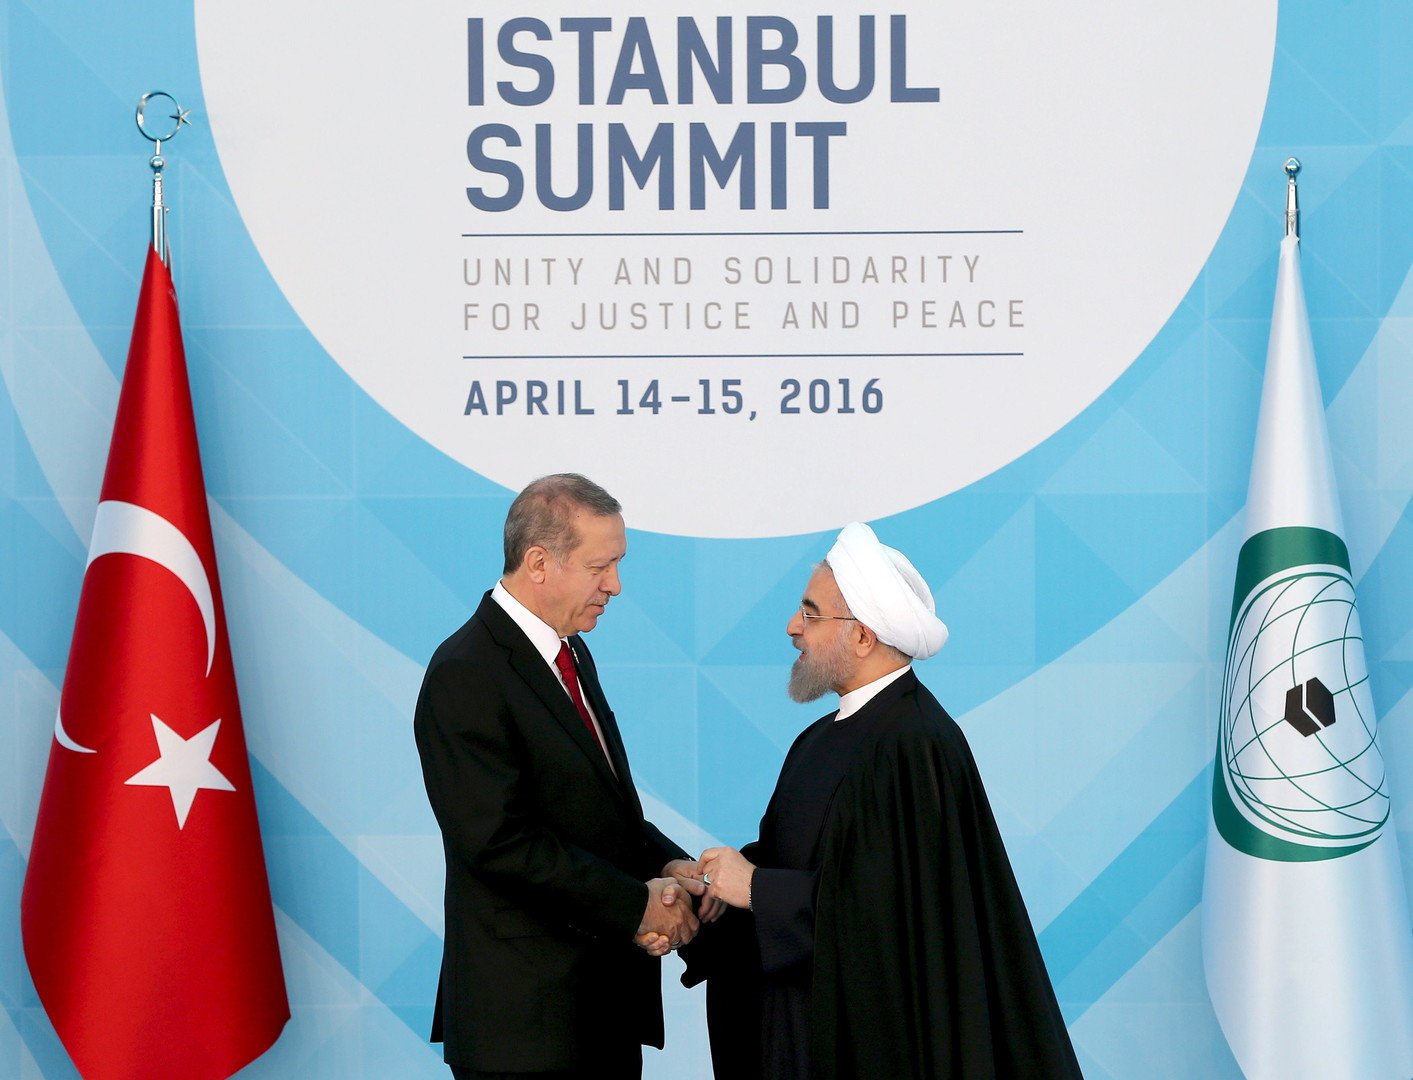 واشنطن وبروكسل دعمتا بنعومة المحاولة الانقلابية في تركيا